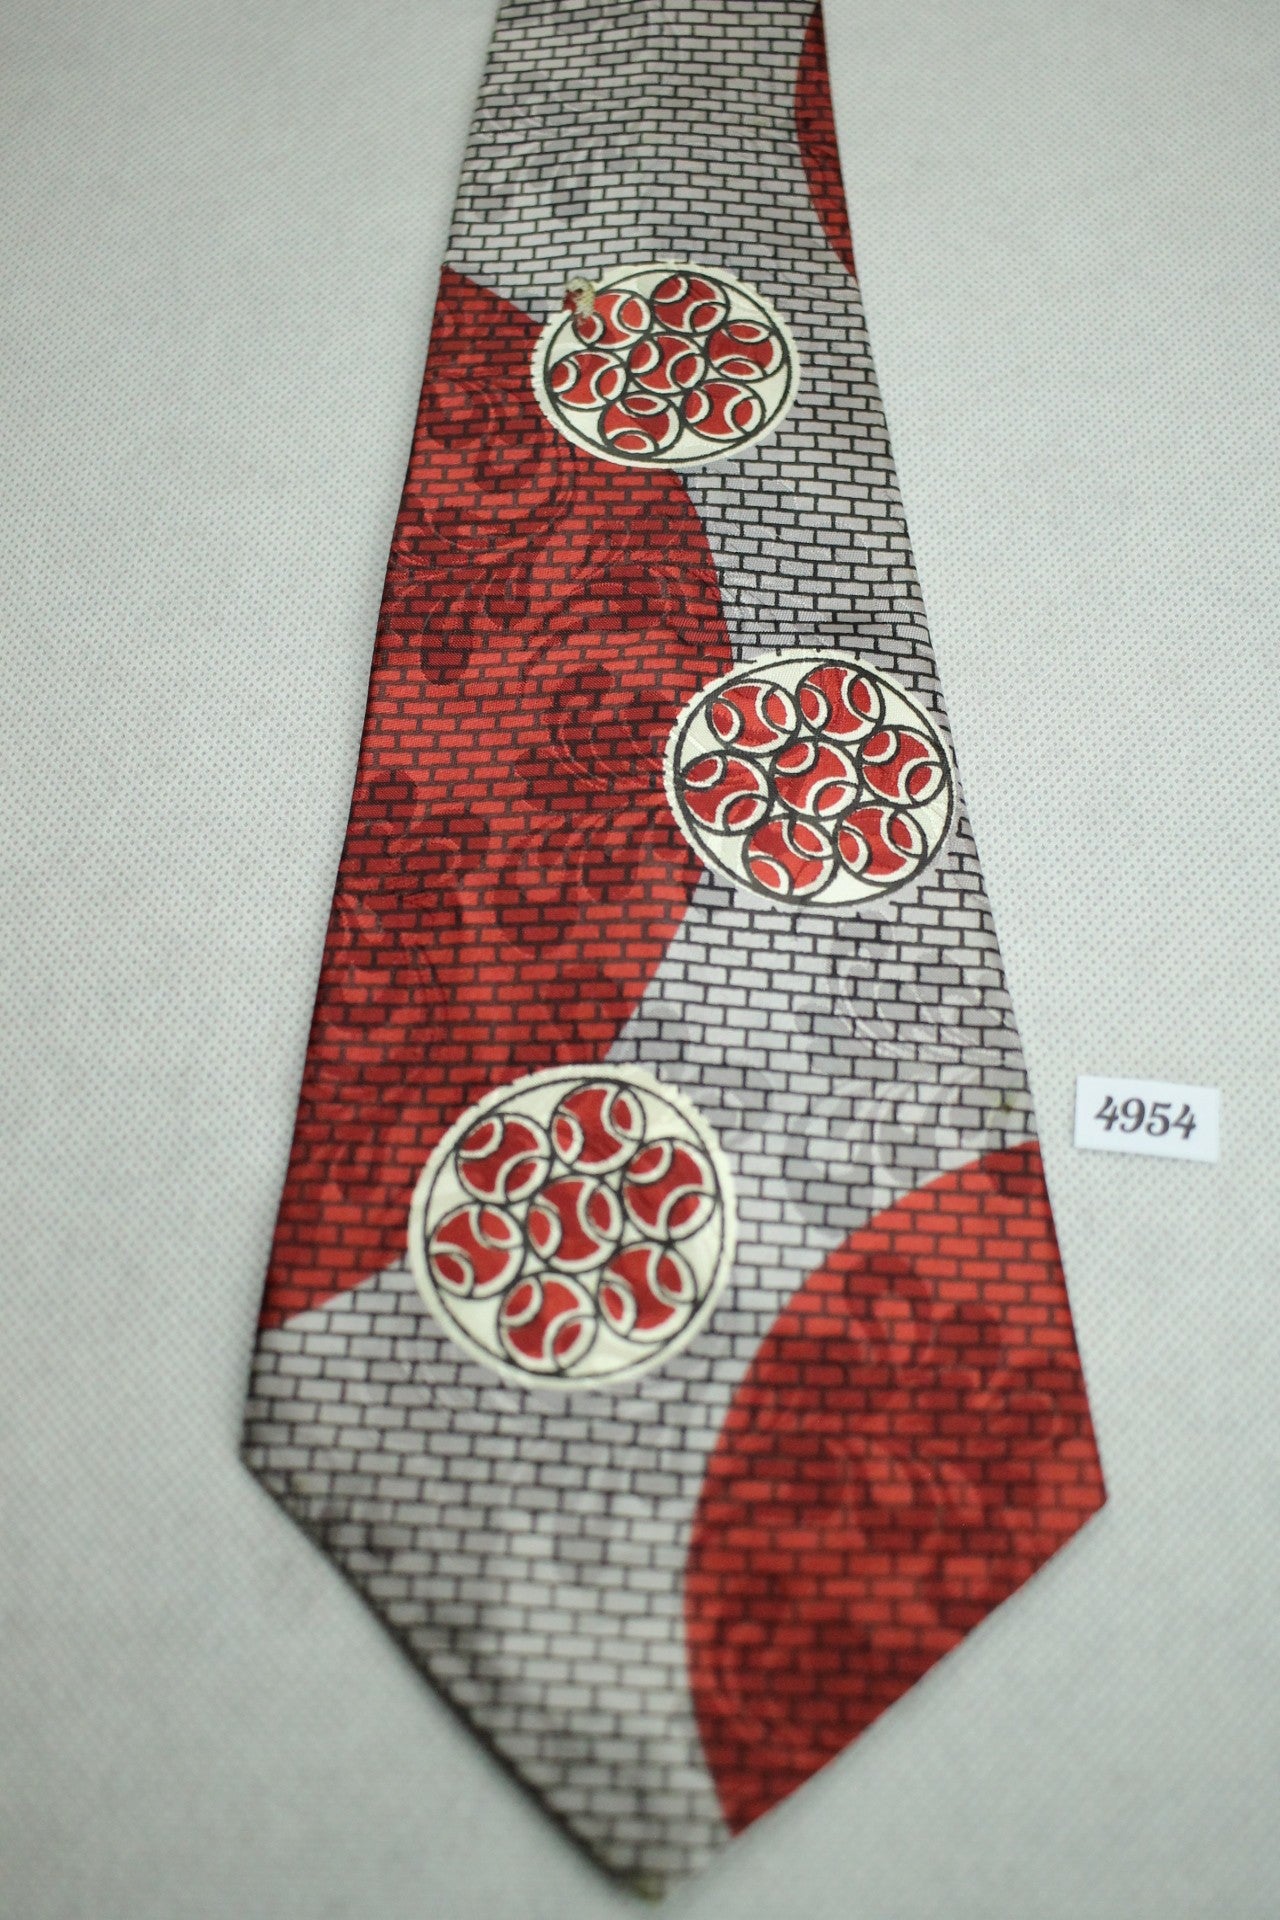 Vintage Helmsley King Swing Tie 1940s/50s Jacquard Red Grey